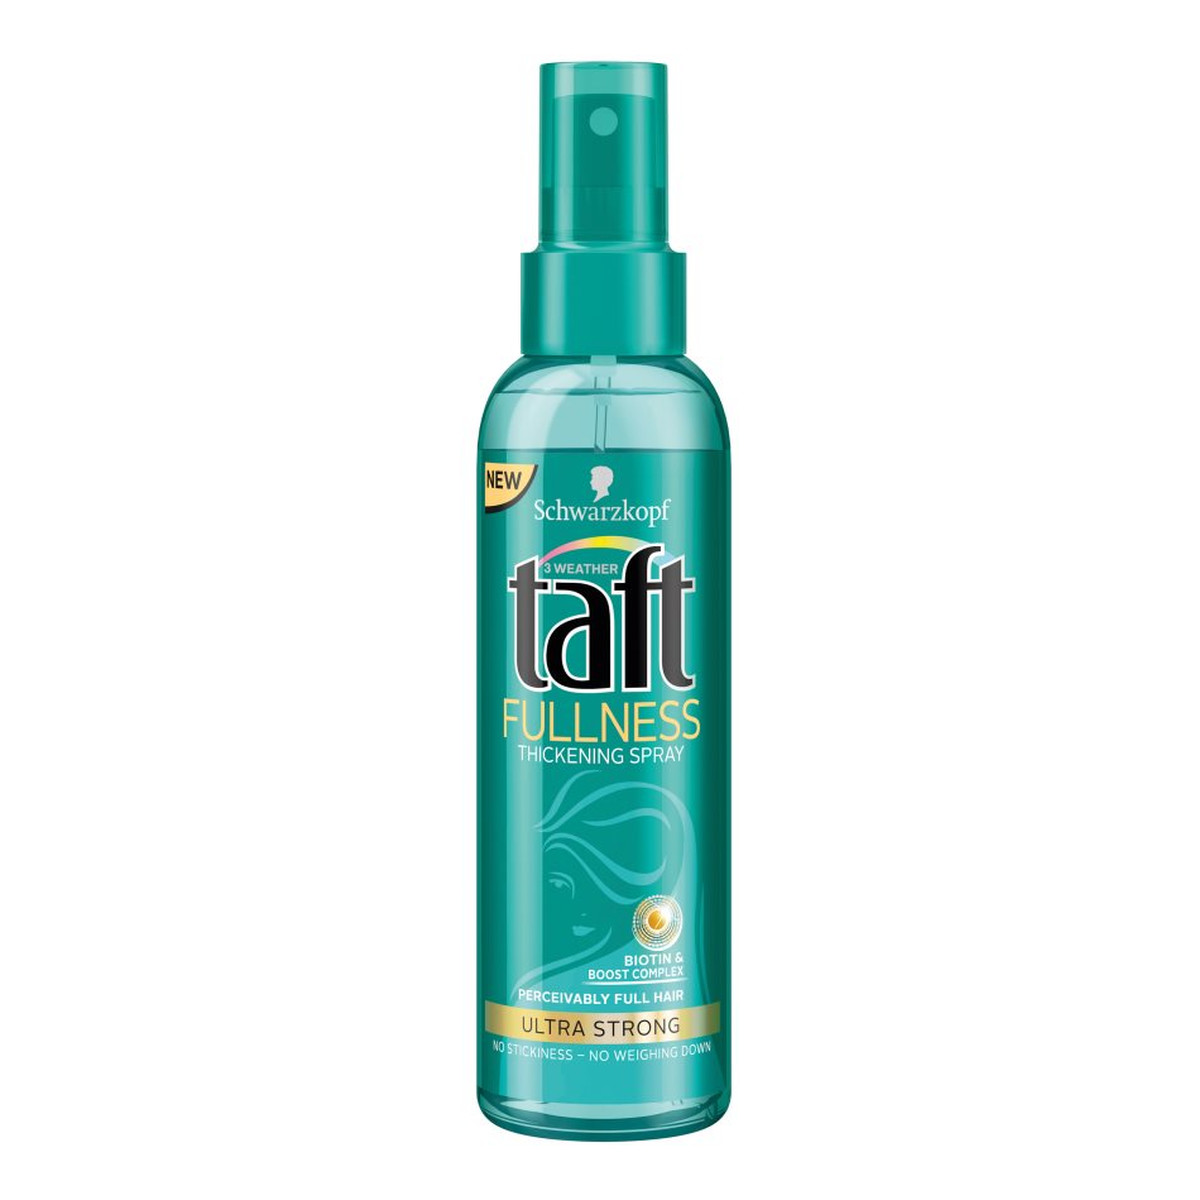 Taft Fullness Spray do włosów zwiększający objętość 150ml